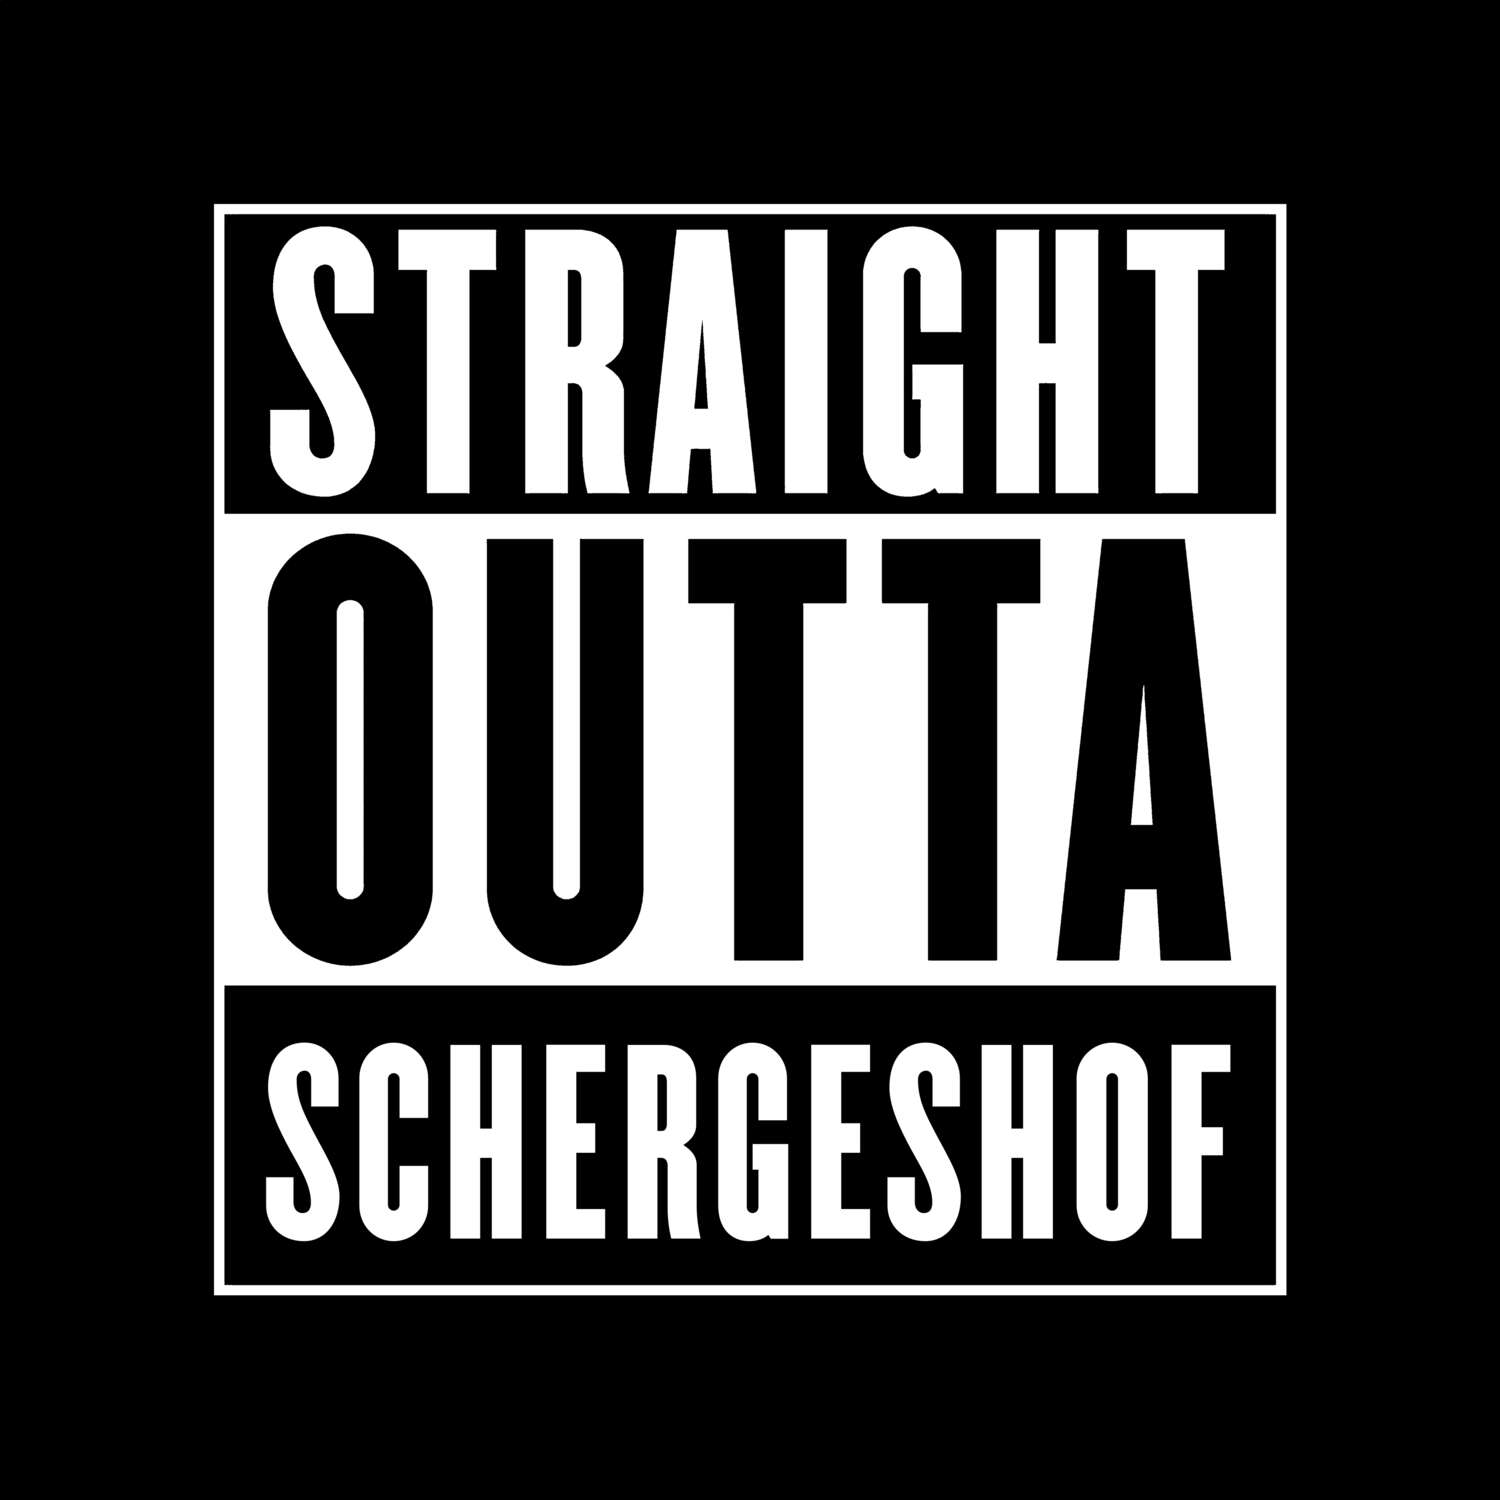 Schergeshof T-Shirt »Straight Outta«